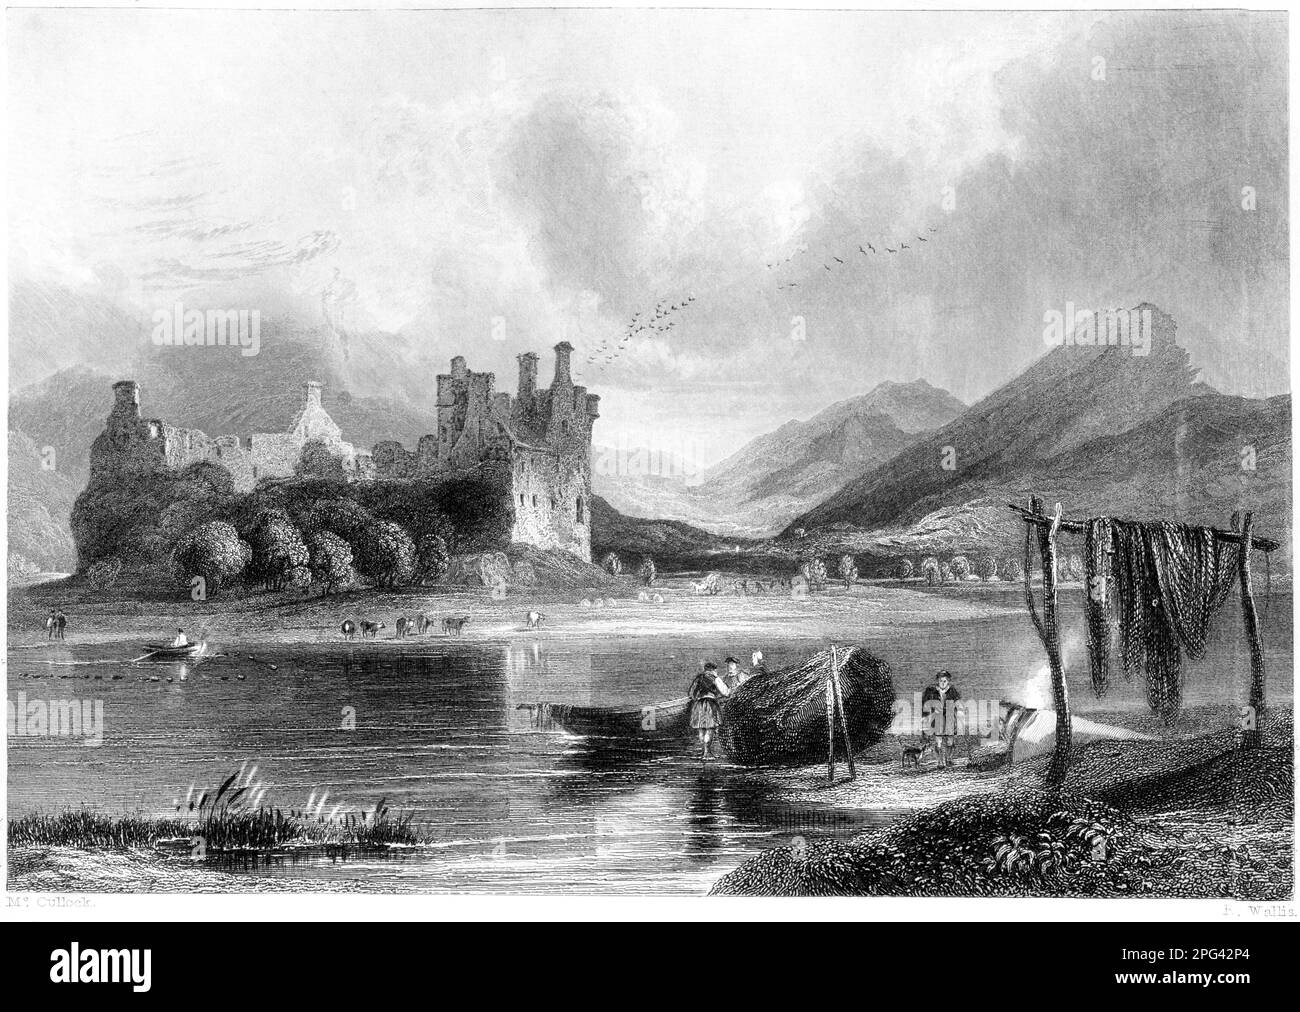 Eine Gravur von Kilchurn Castle, Loch Awe, Argyleshire, Schottland, Großbritannien, gescannt mit hoher Auflösung aus einem 1840 gedruckten Buch. Stockfoto